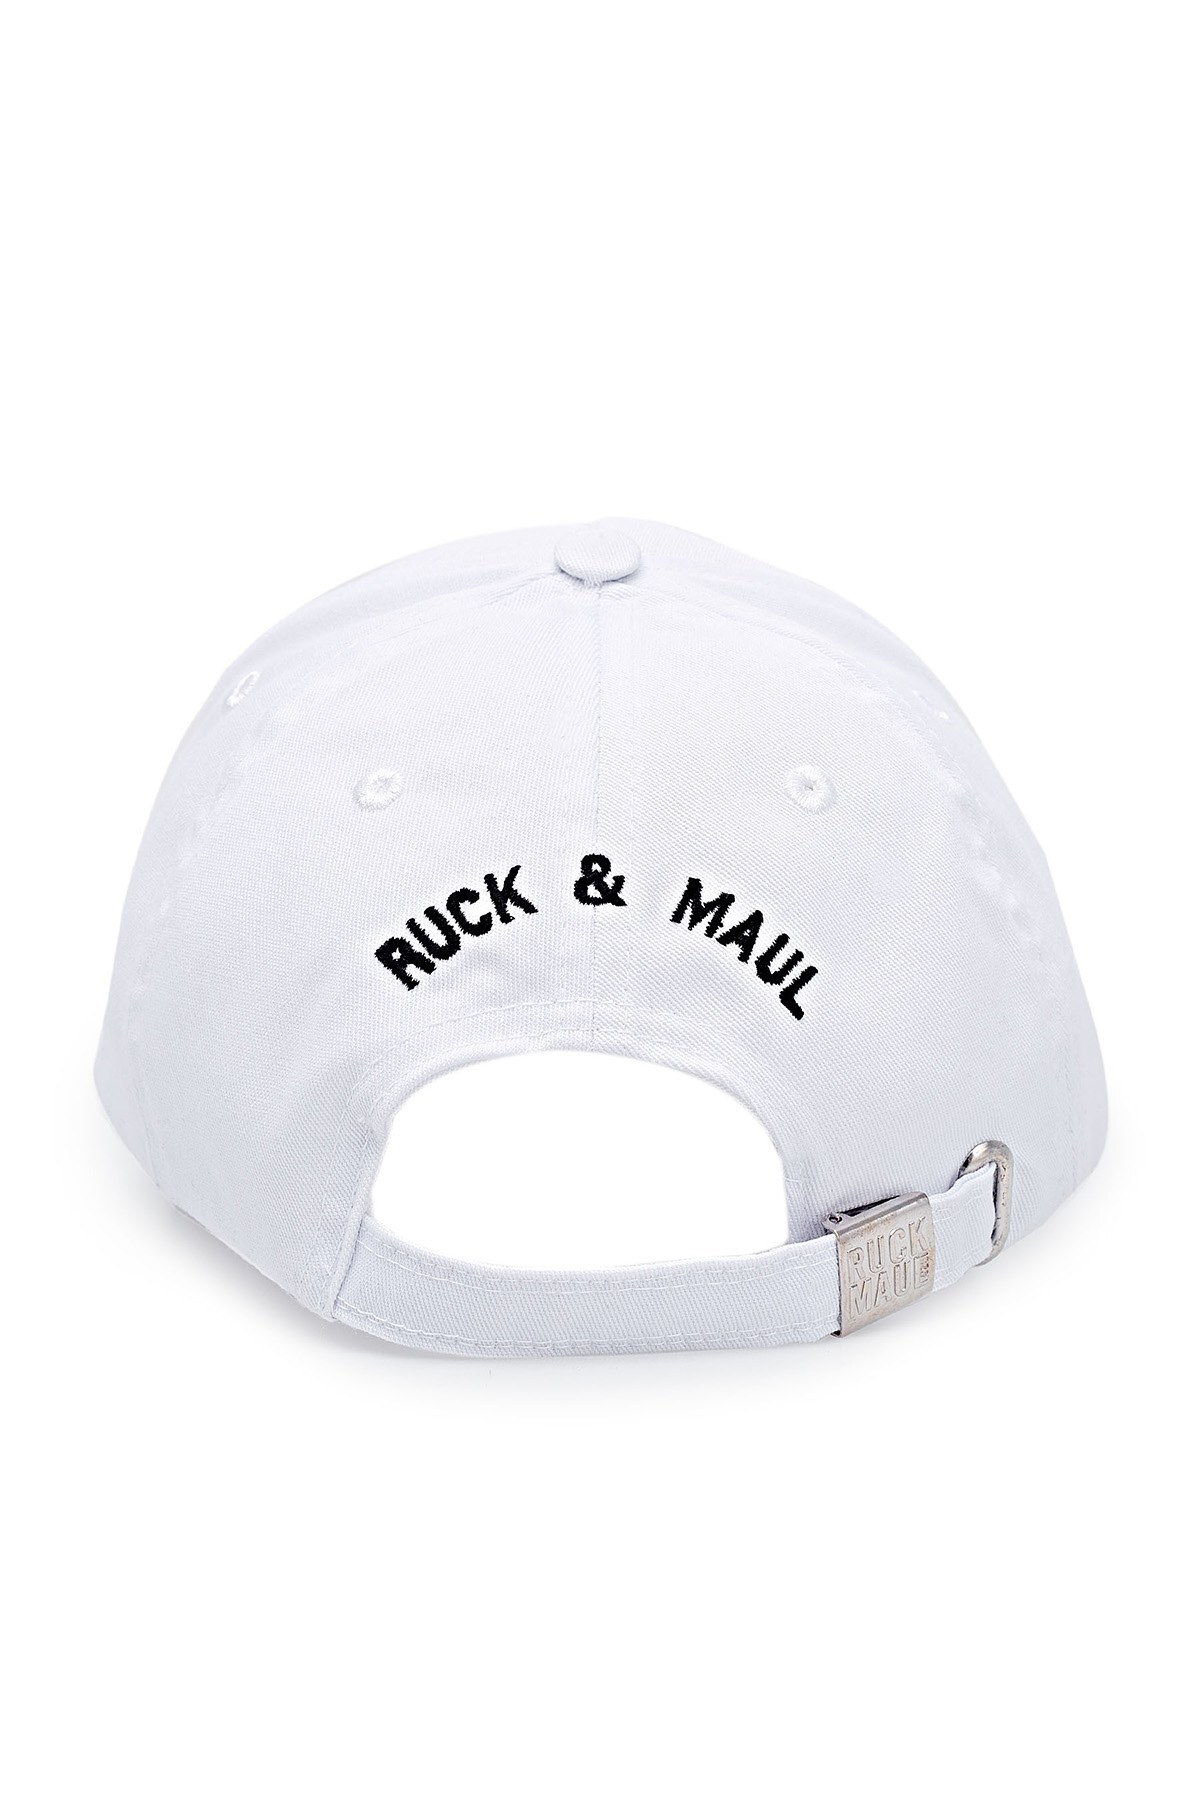 Ruck & Maul Baskılı Unisex Şapka S20A3720Y1450001 BEYAZ